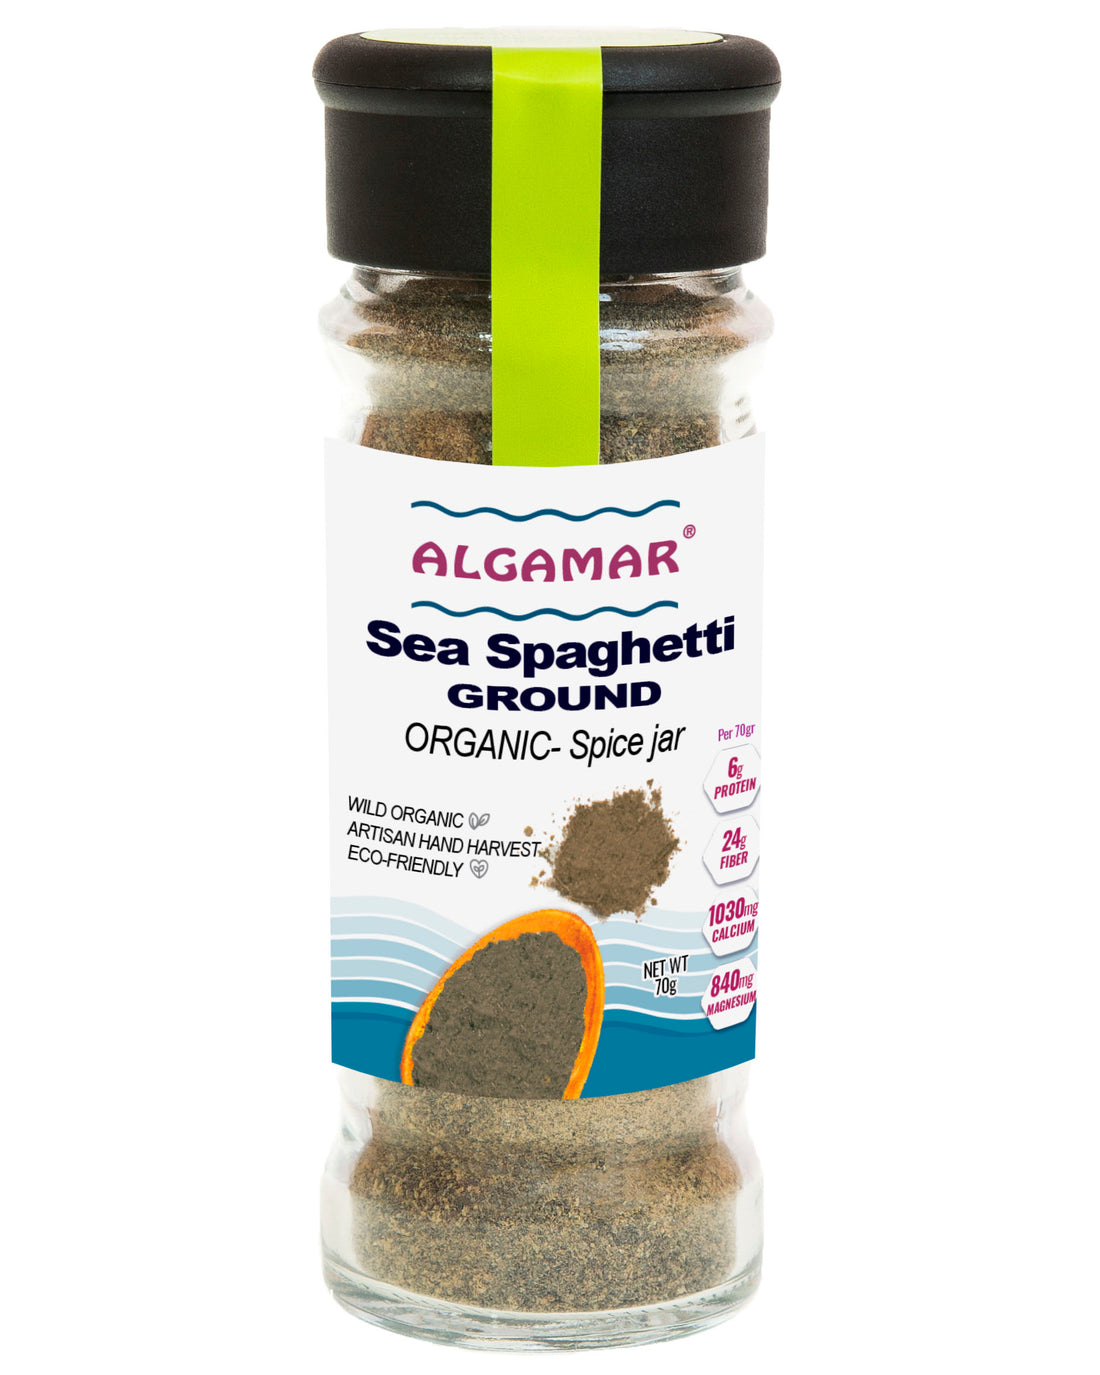 Sea Spaghetti Seaweed Ground, Organic